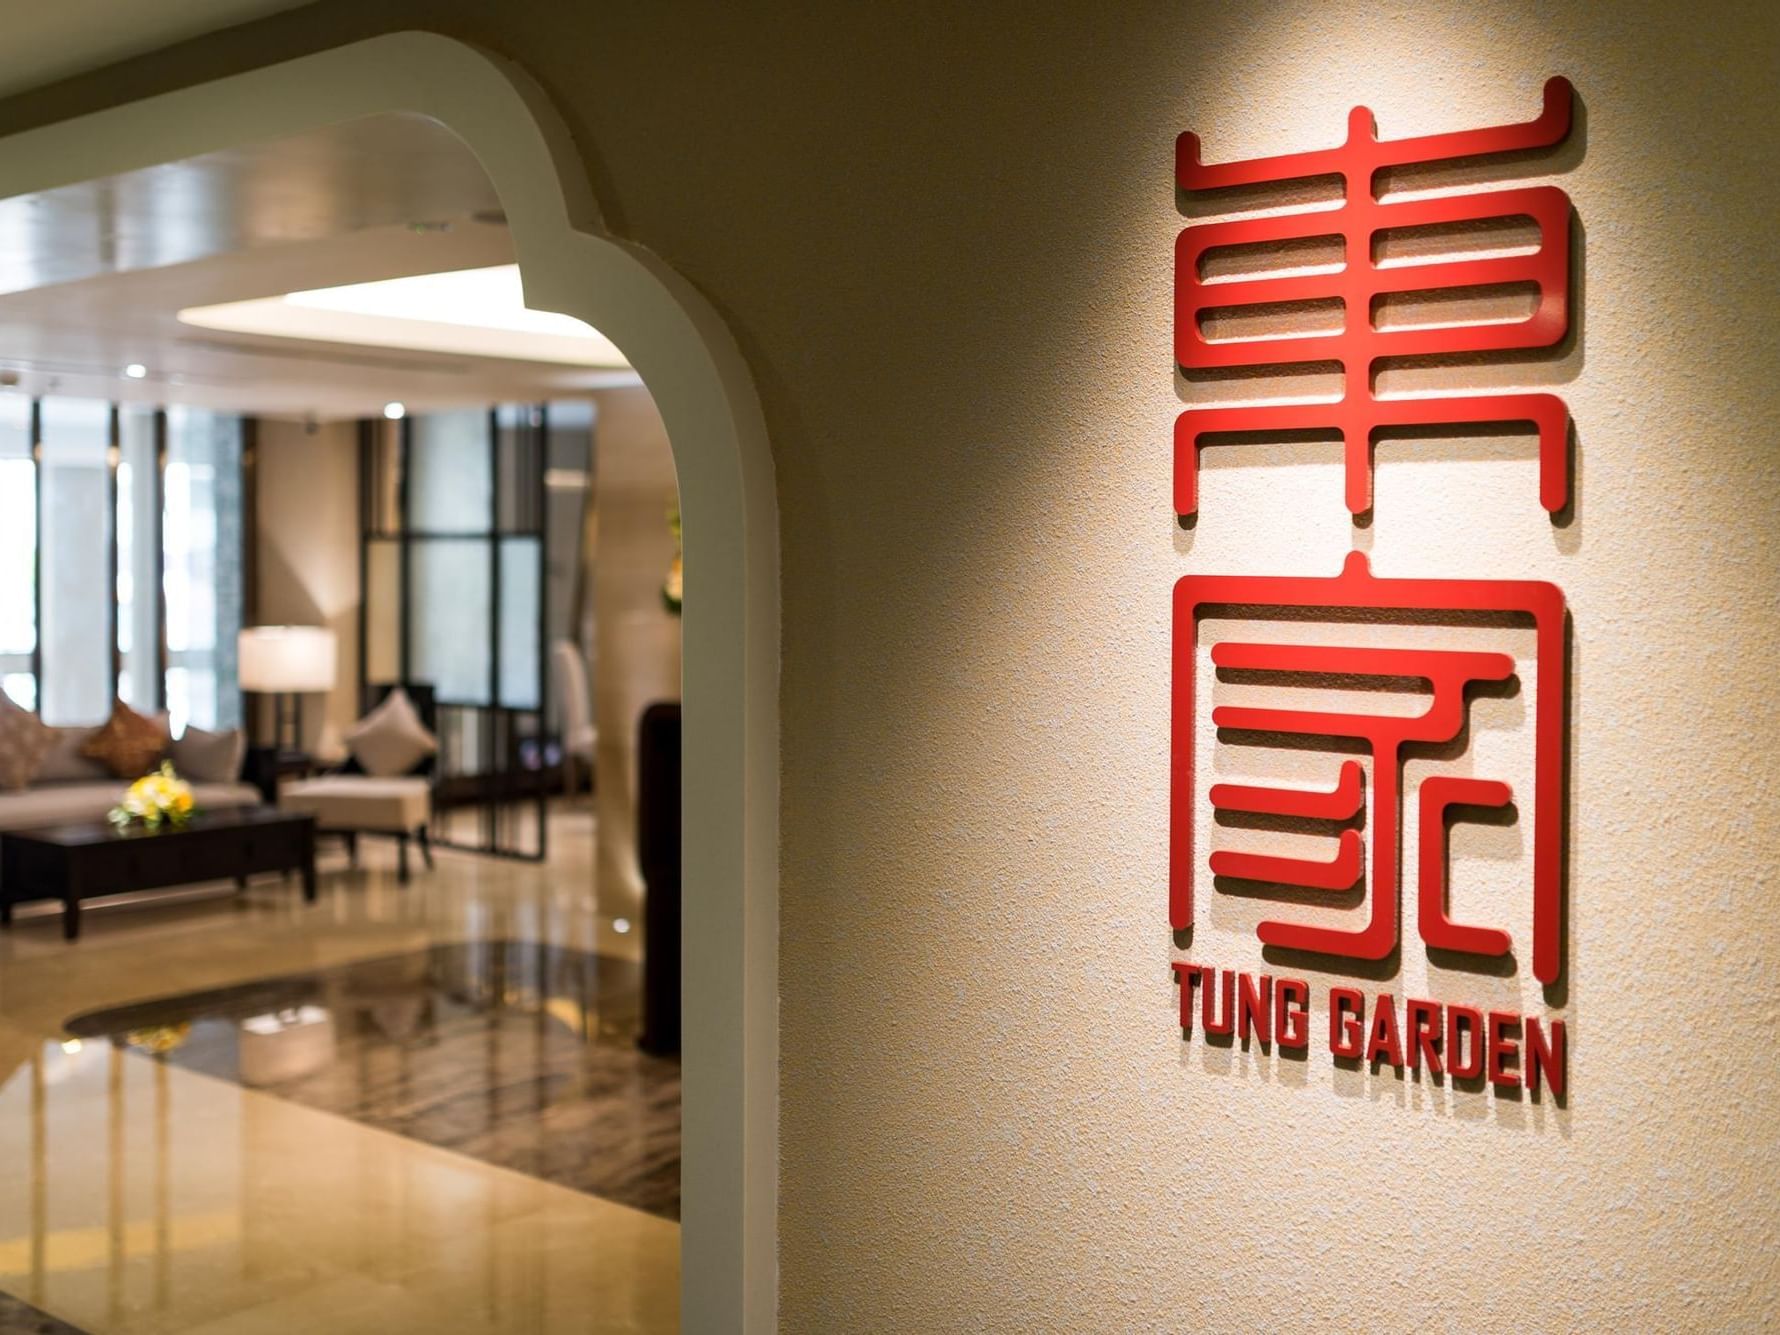 Tung Garden logo in the entrance at Eastin Grand Hotel Saigon